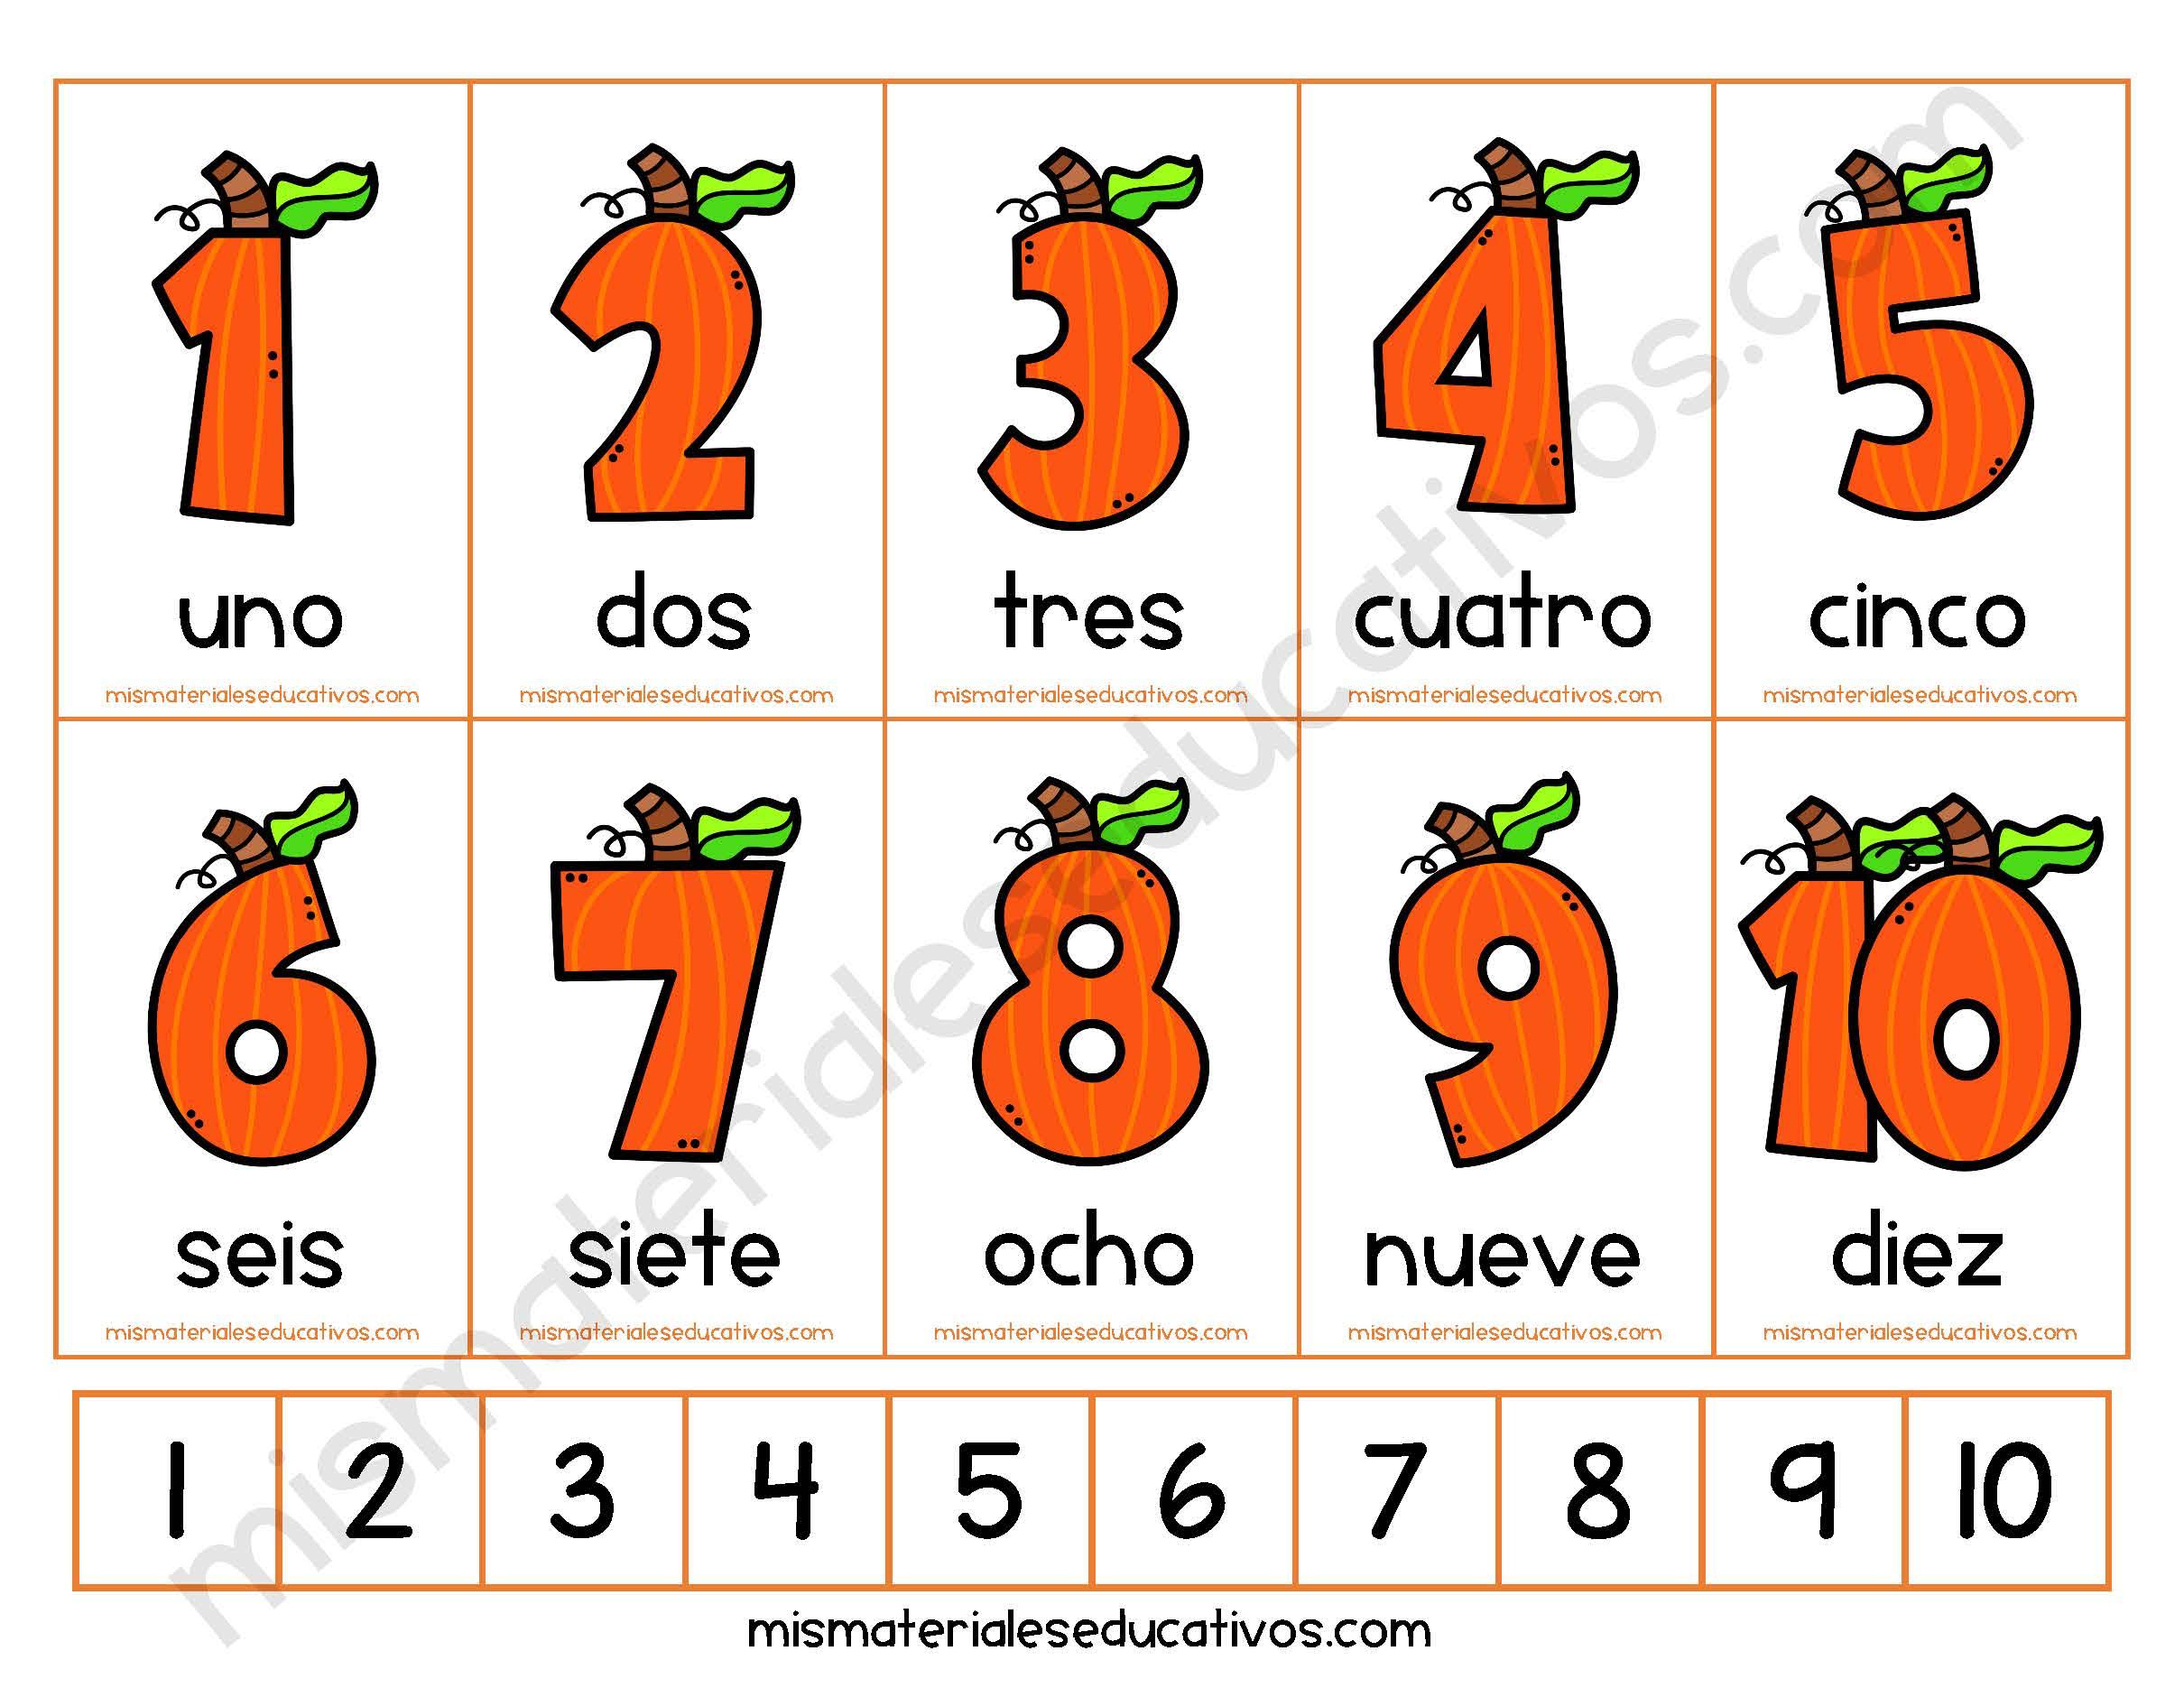 Mis Materiales Educativos: Tarjetas de números del al 10 imprimir. Completar secuencia numérica.